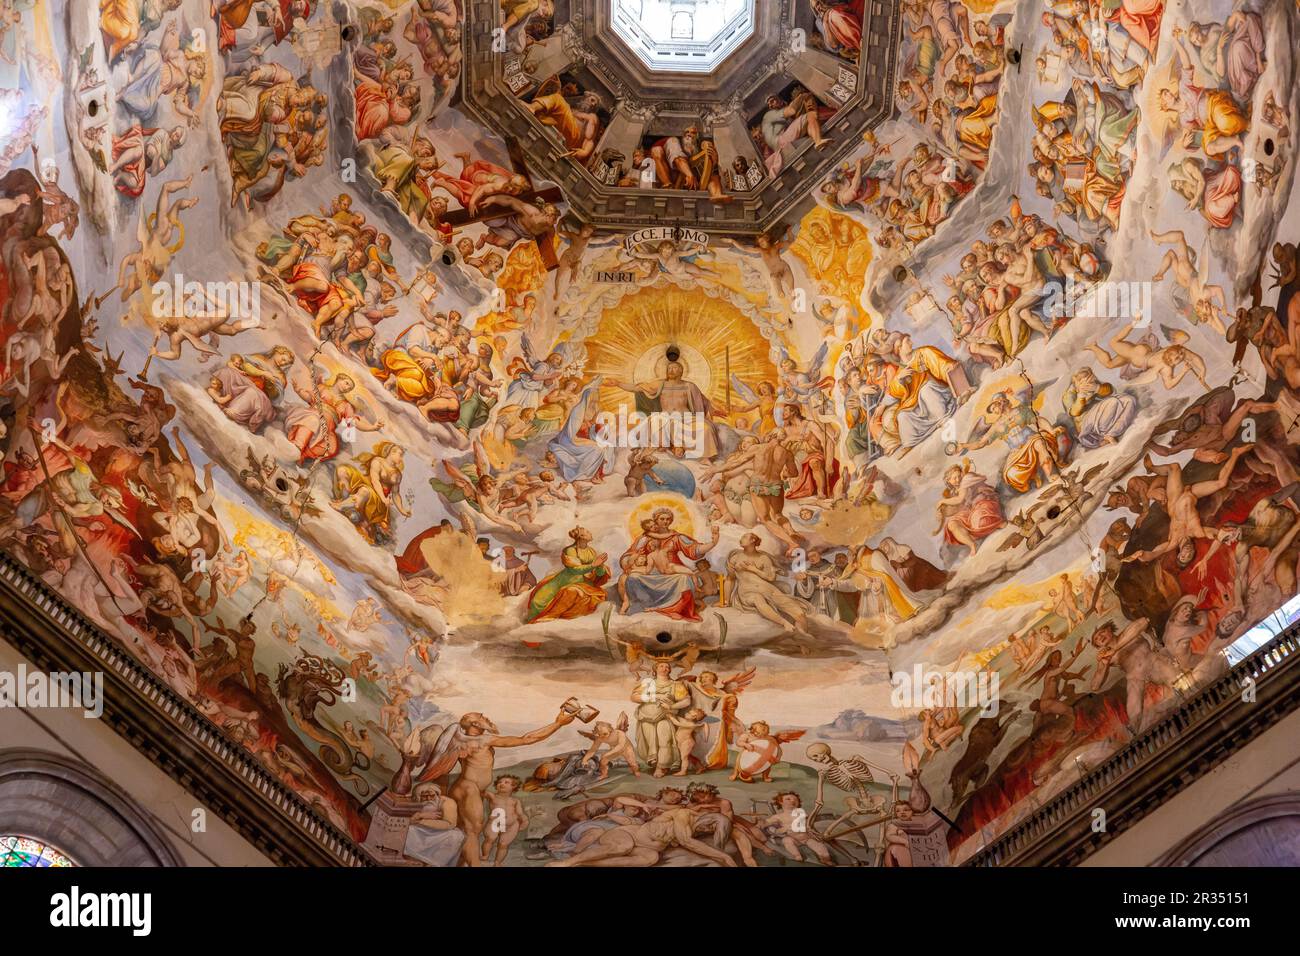 Firenze, Italia - 6 aprile 2022: Dettaglio interno dal Duomo di Firenze, Cattedrale di Santa Maria del Fiore a Firenze. L'edificio era Foto Stock